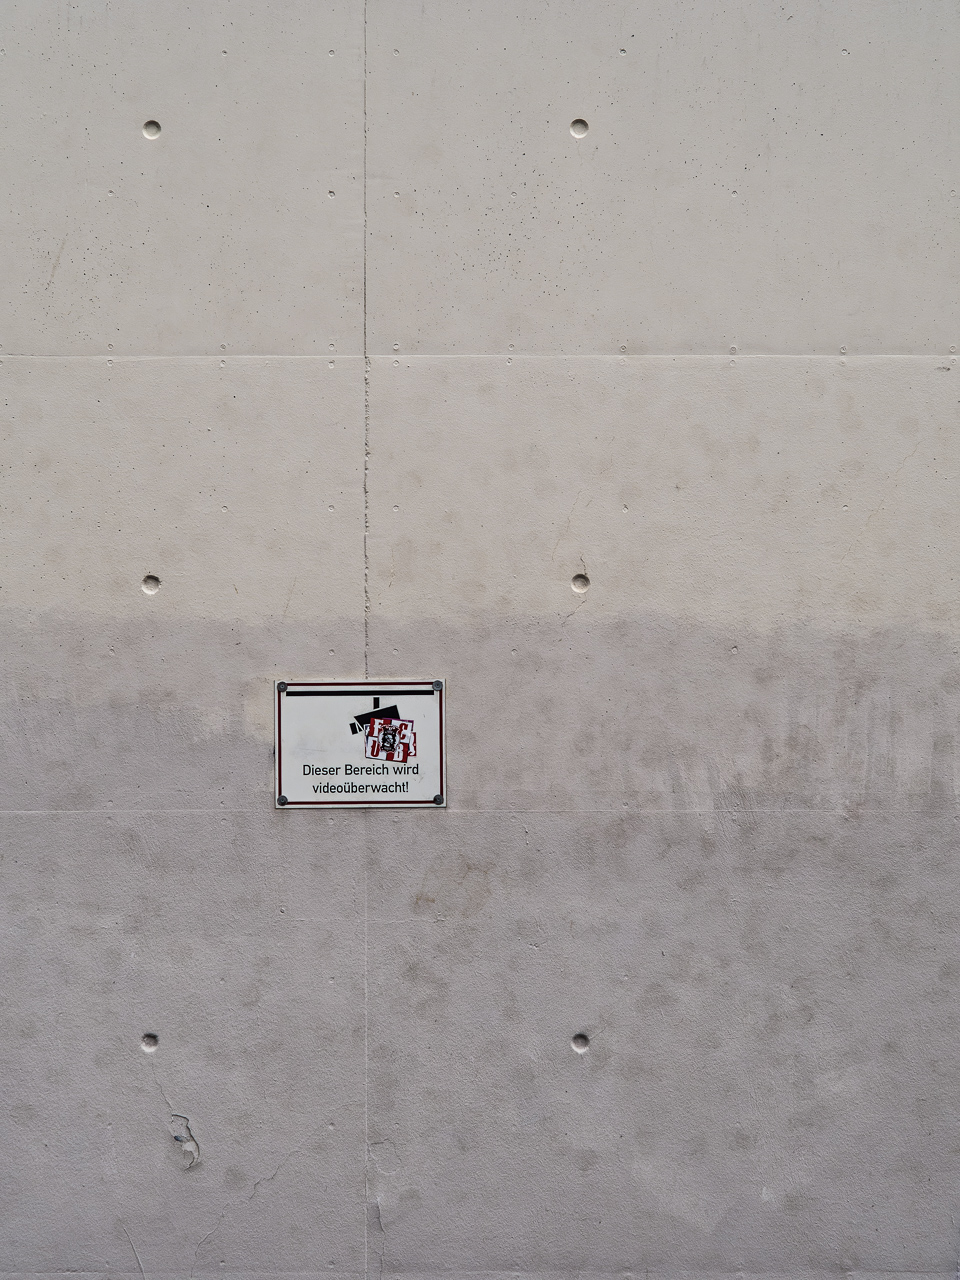 Weiß geputzte, etwas fleckige Wand, darauf ein Schild "Dieser Bereich wird videoüberwacht"